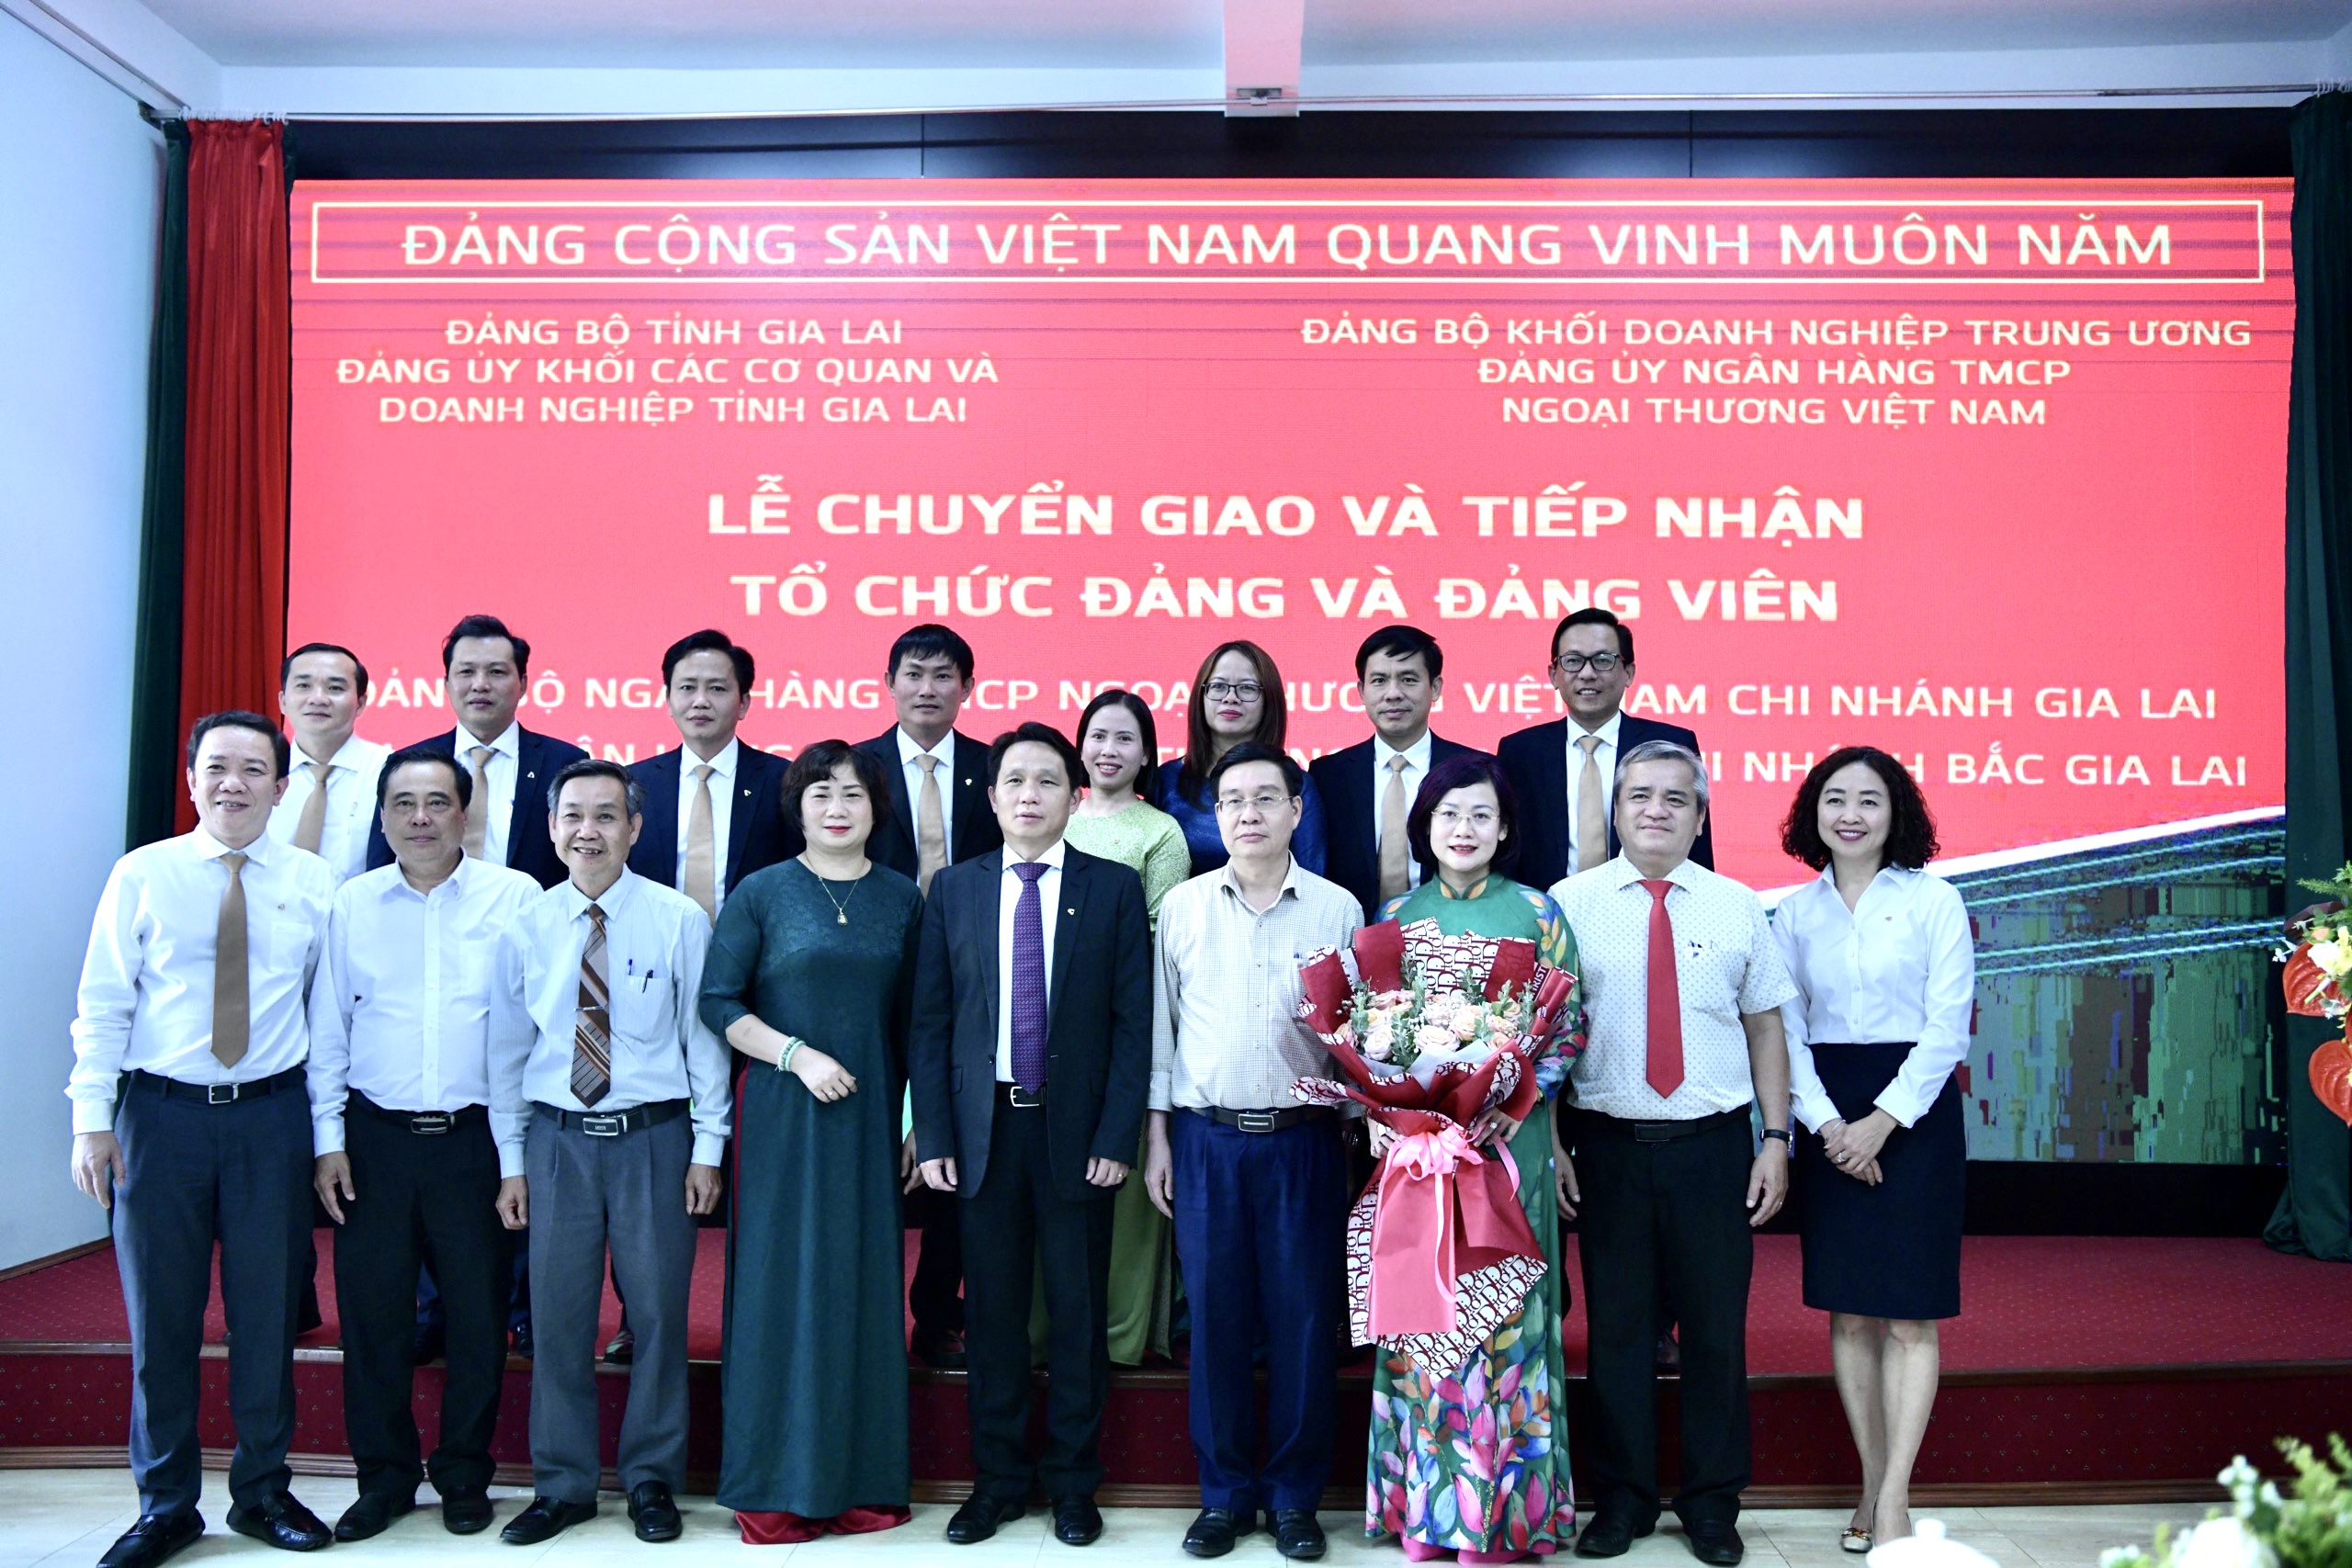 Đảng bộ Vietcombank Gia Lai và Chi bộ Vietcombank Bắc Gia Lai tổ chức Lễ chuyển giao và tiếp nhận tổ chức cơ sở Đảng và Đảng viên về Đảng bộ Vietcombank